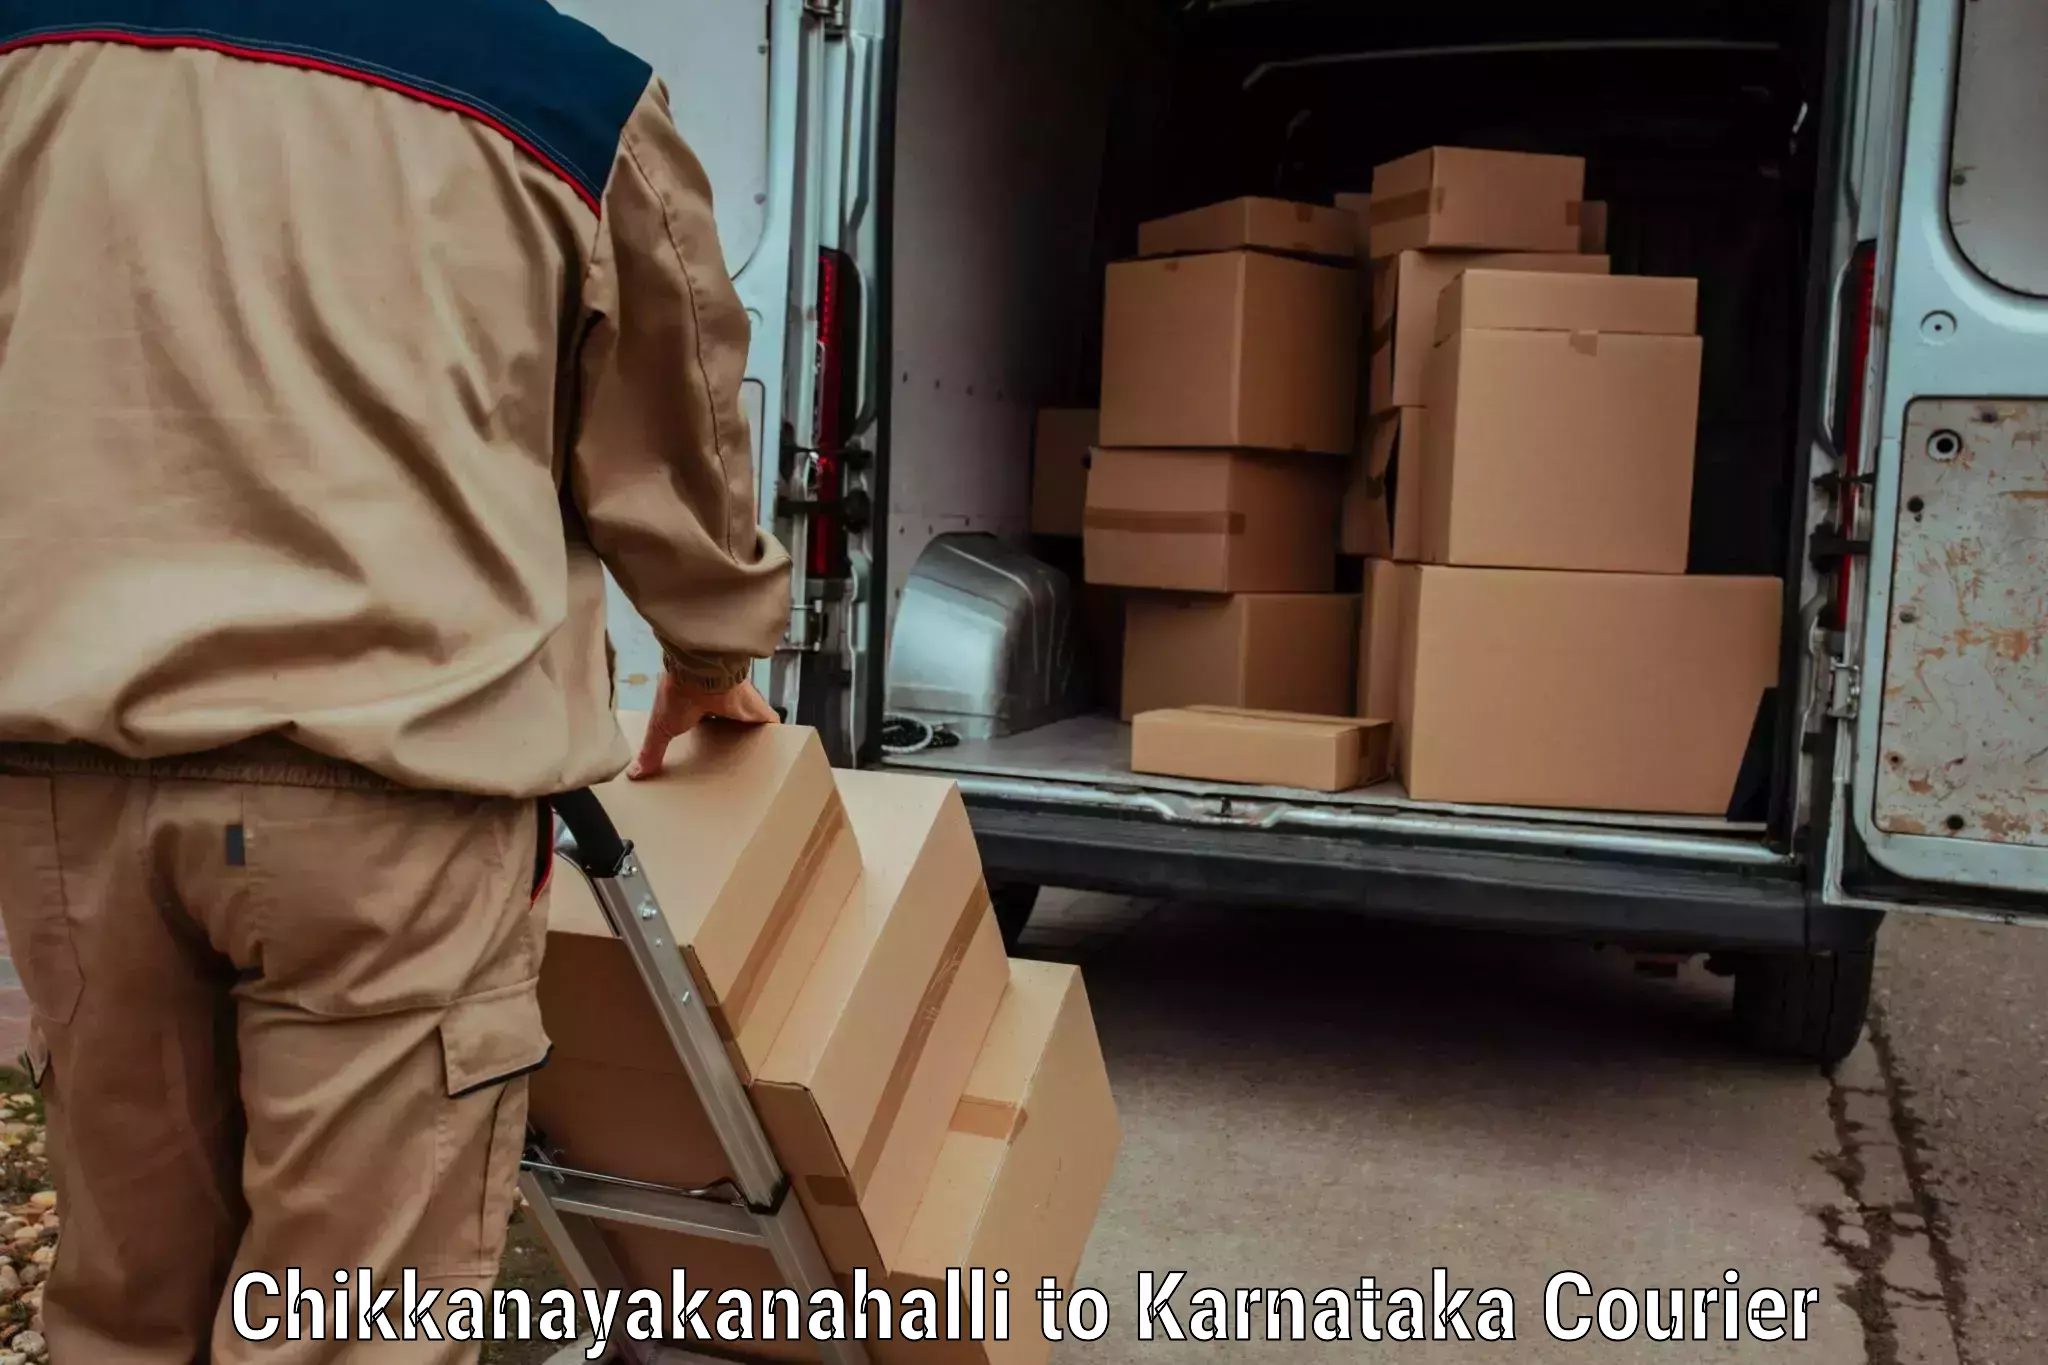 Global parcel delivery Chikkanayakanahalli to Virajpet